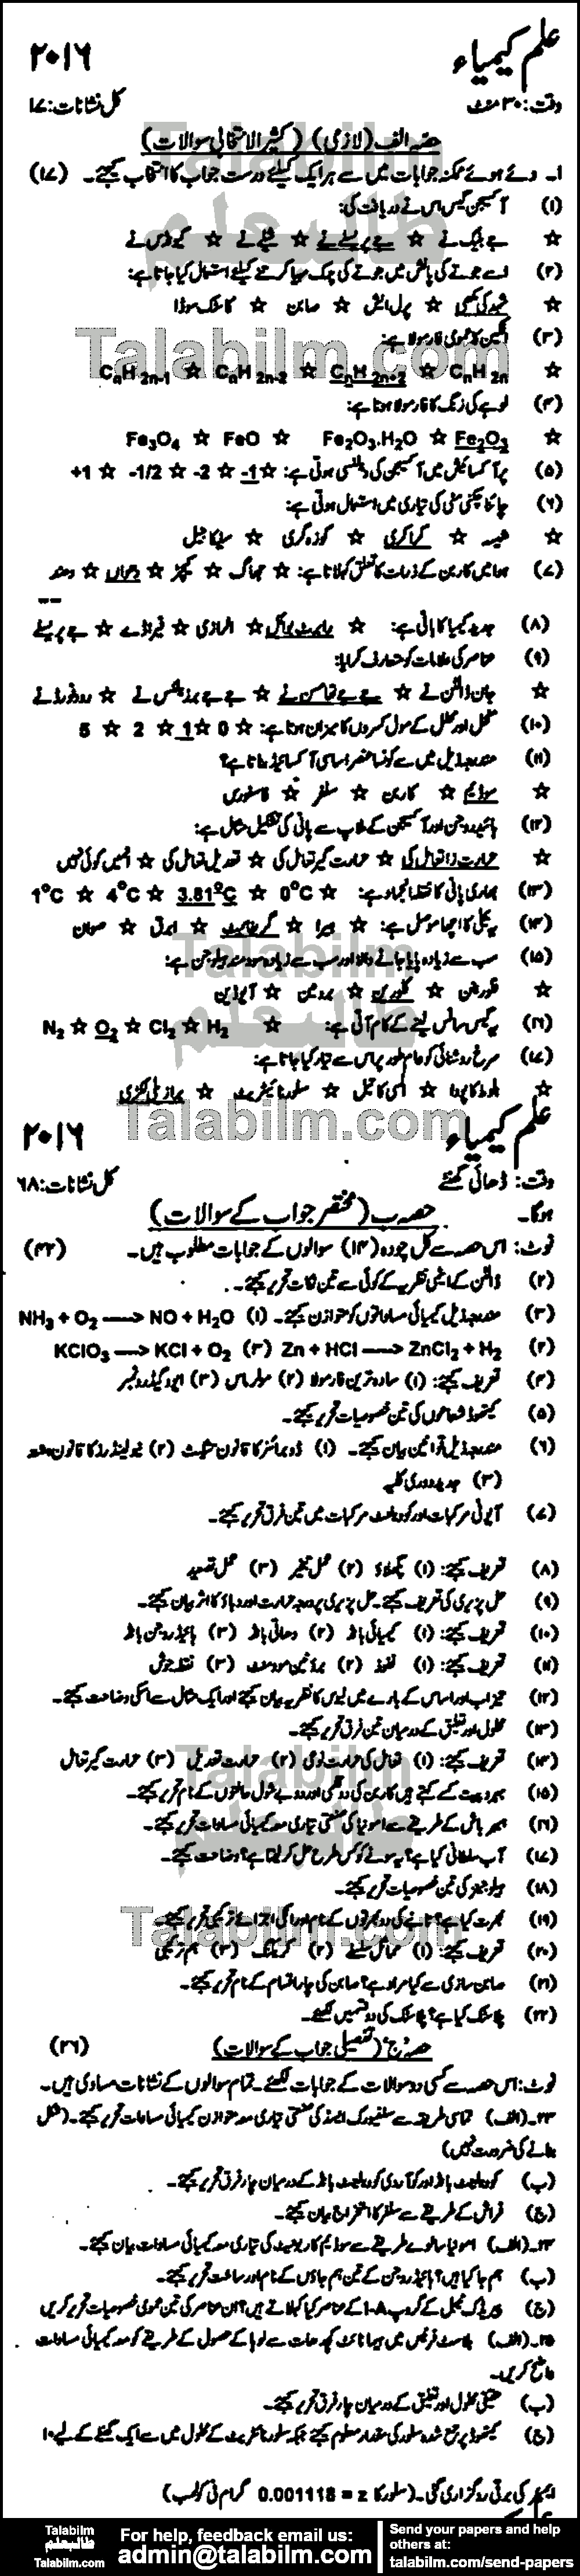 Chemistry 0 past paper for Urdu Medium 2016 Group-I